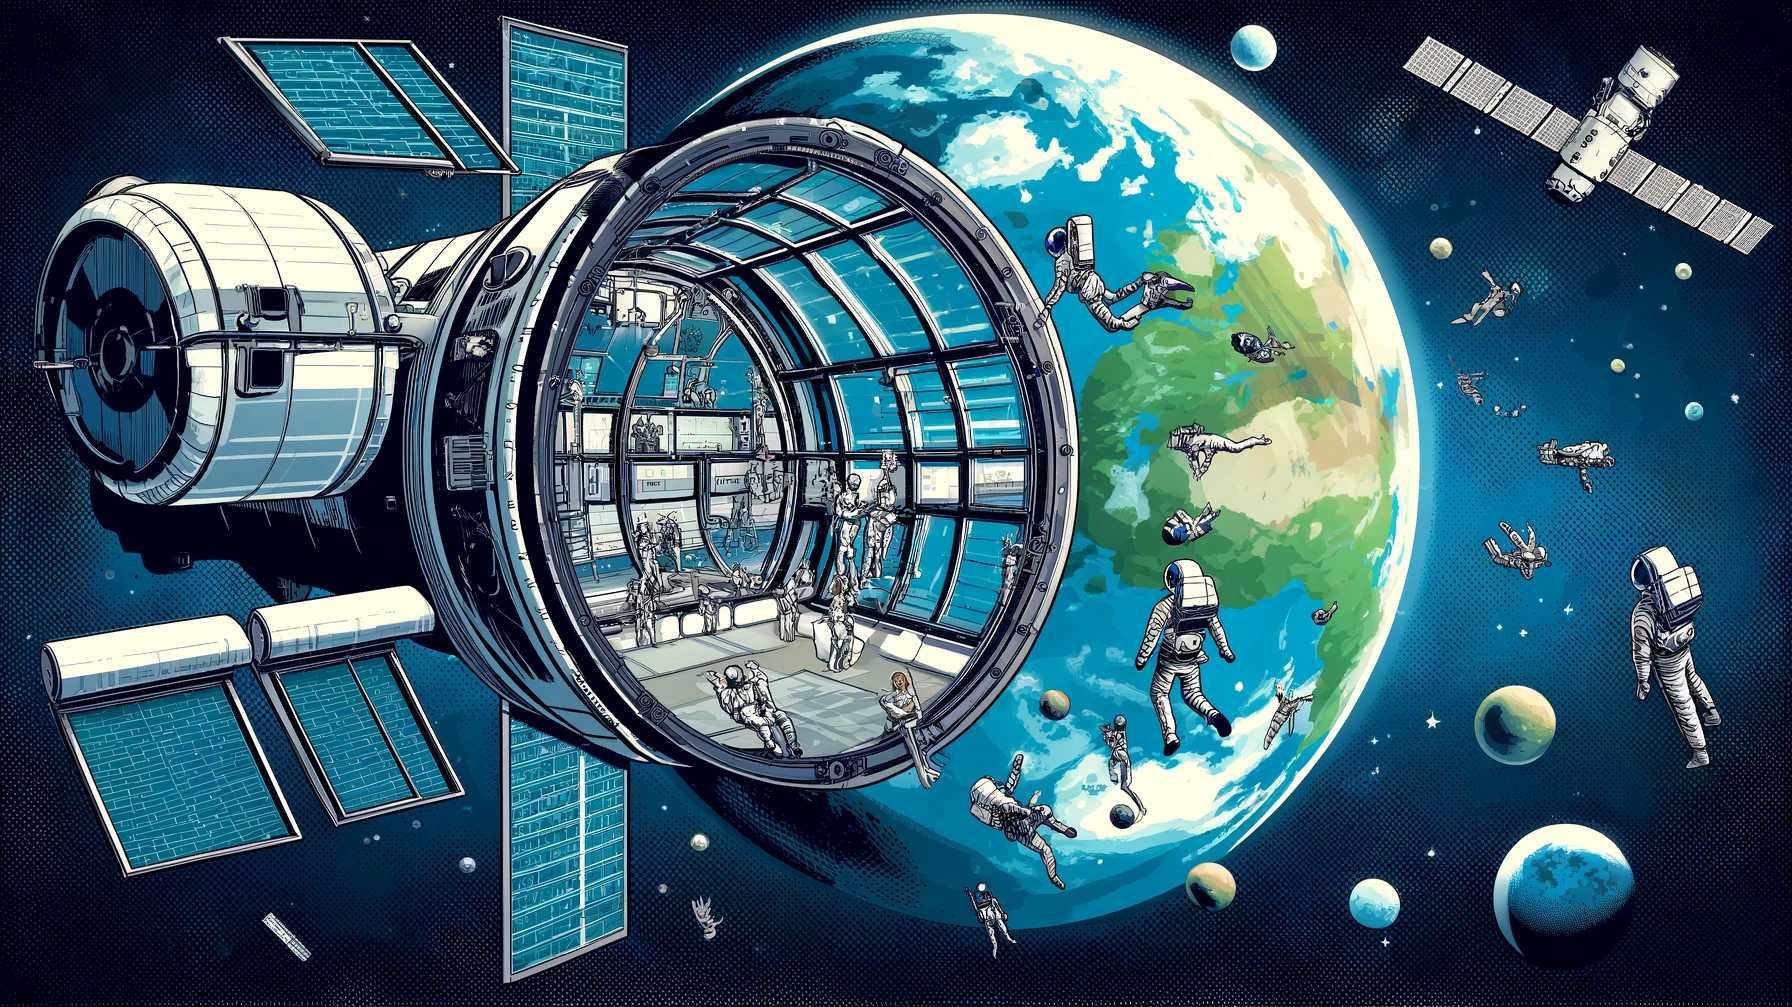 Orbital-Reef-Weltraumstation-Zukunft-Blick-auf-die-Erde-Astronauten-und-Raumtouristen